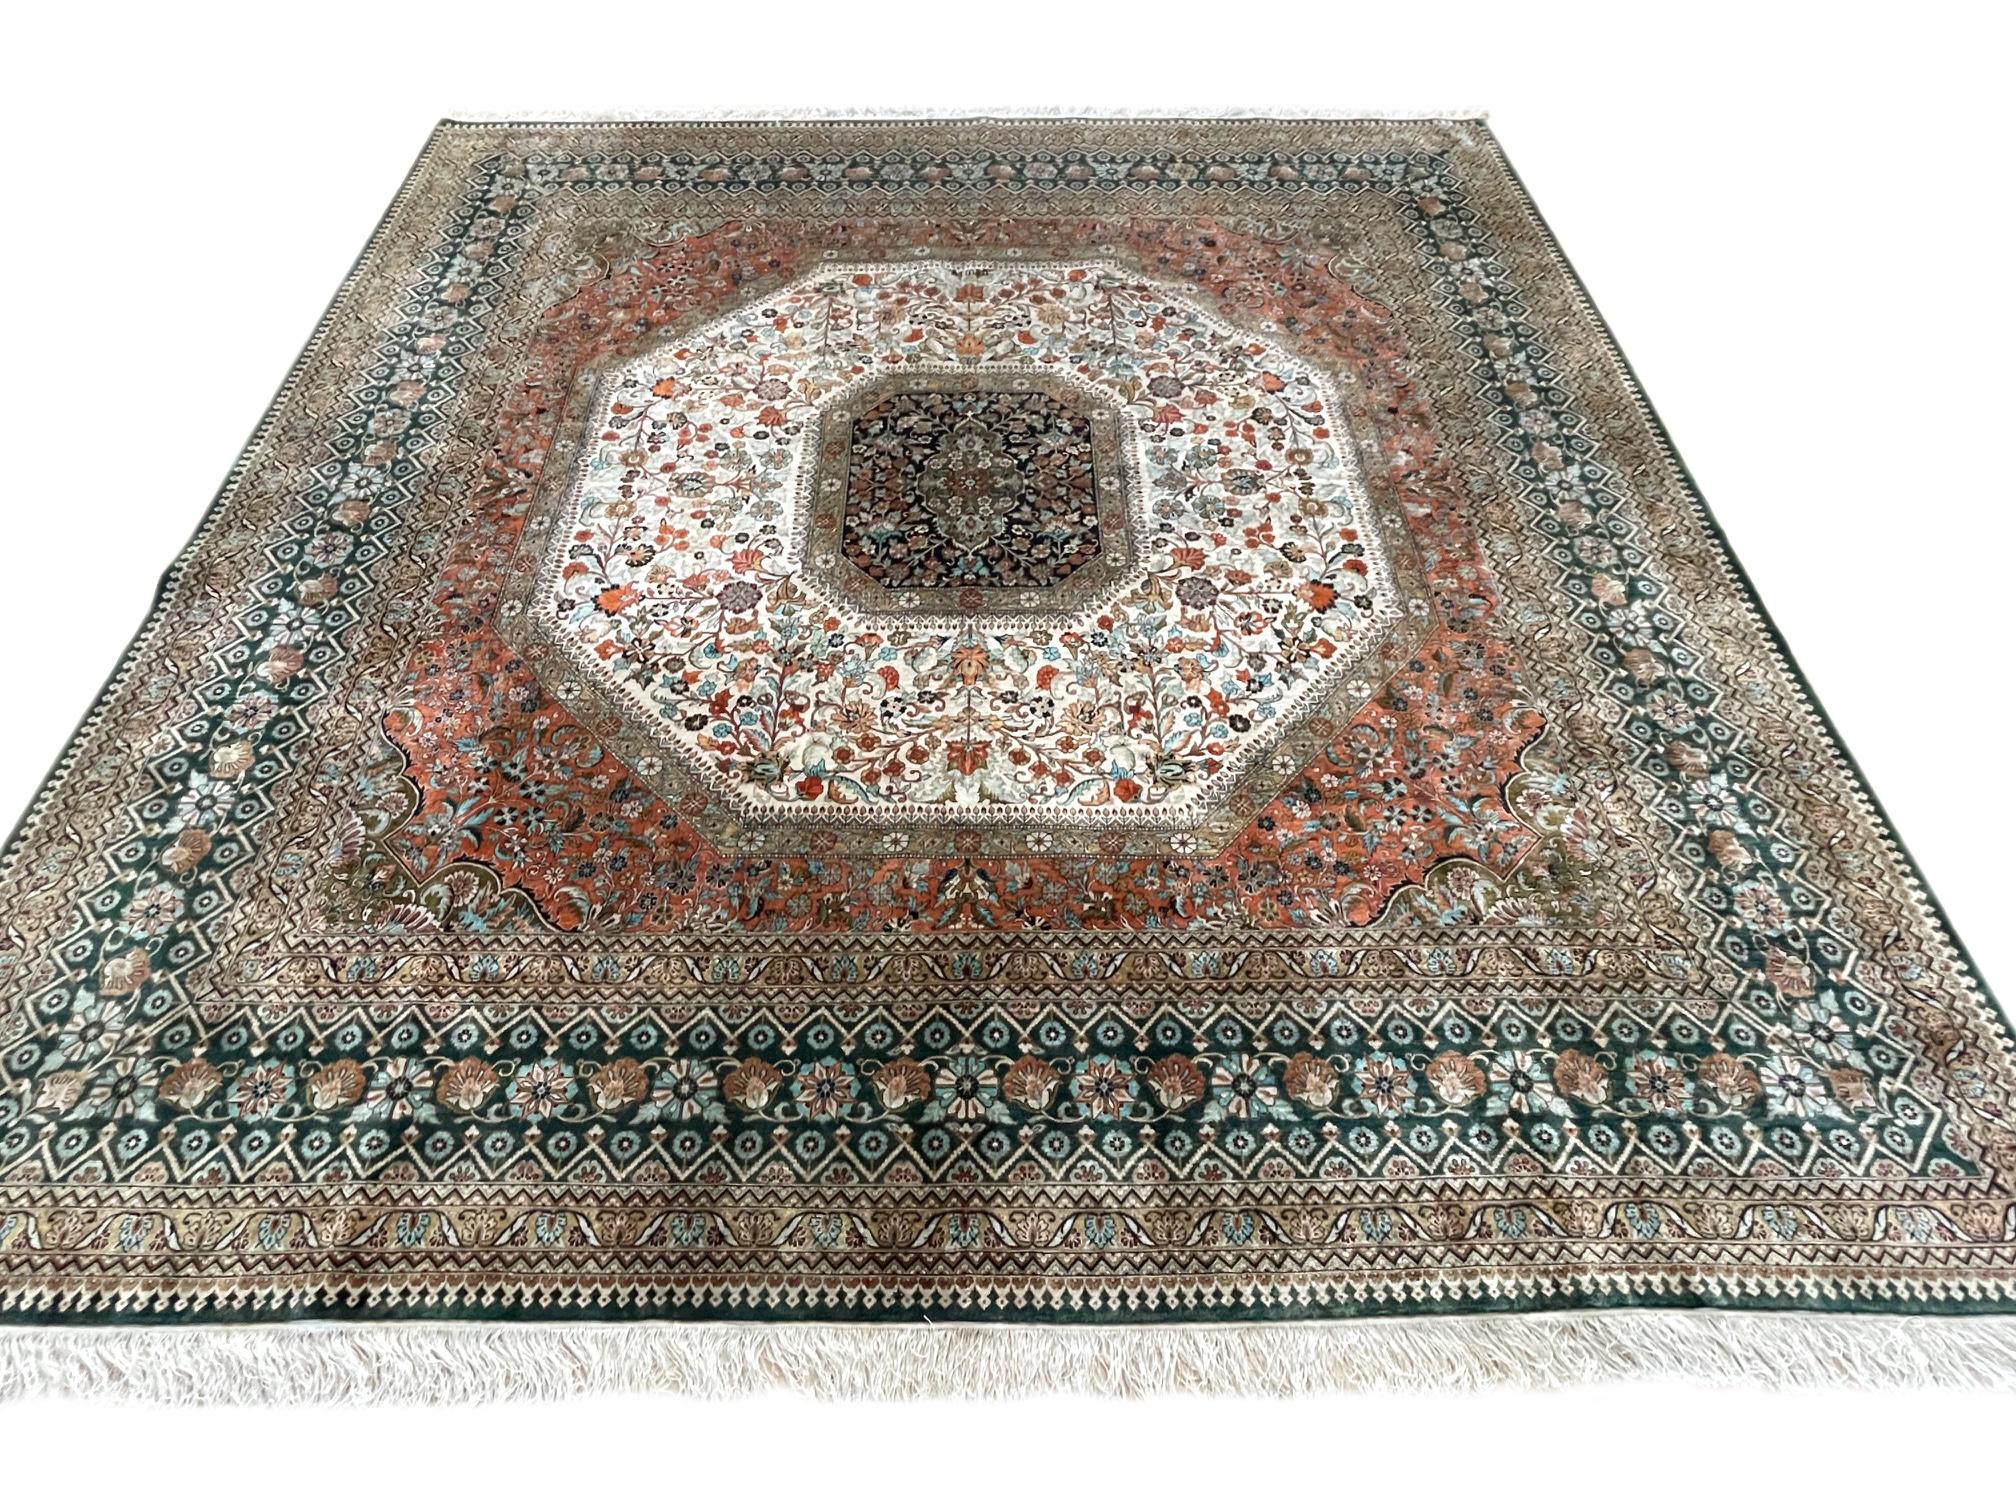 Ce tapis turc tissé à la main est composé de poils de soie et d'une base en soie. La Turquie est connue pour sa grande variété de tapis sur lesquels elle a bâti sa réputation en tant que l'une des plus importantes régions de tissage au monde. Ce